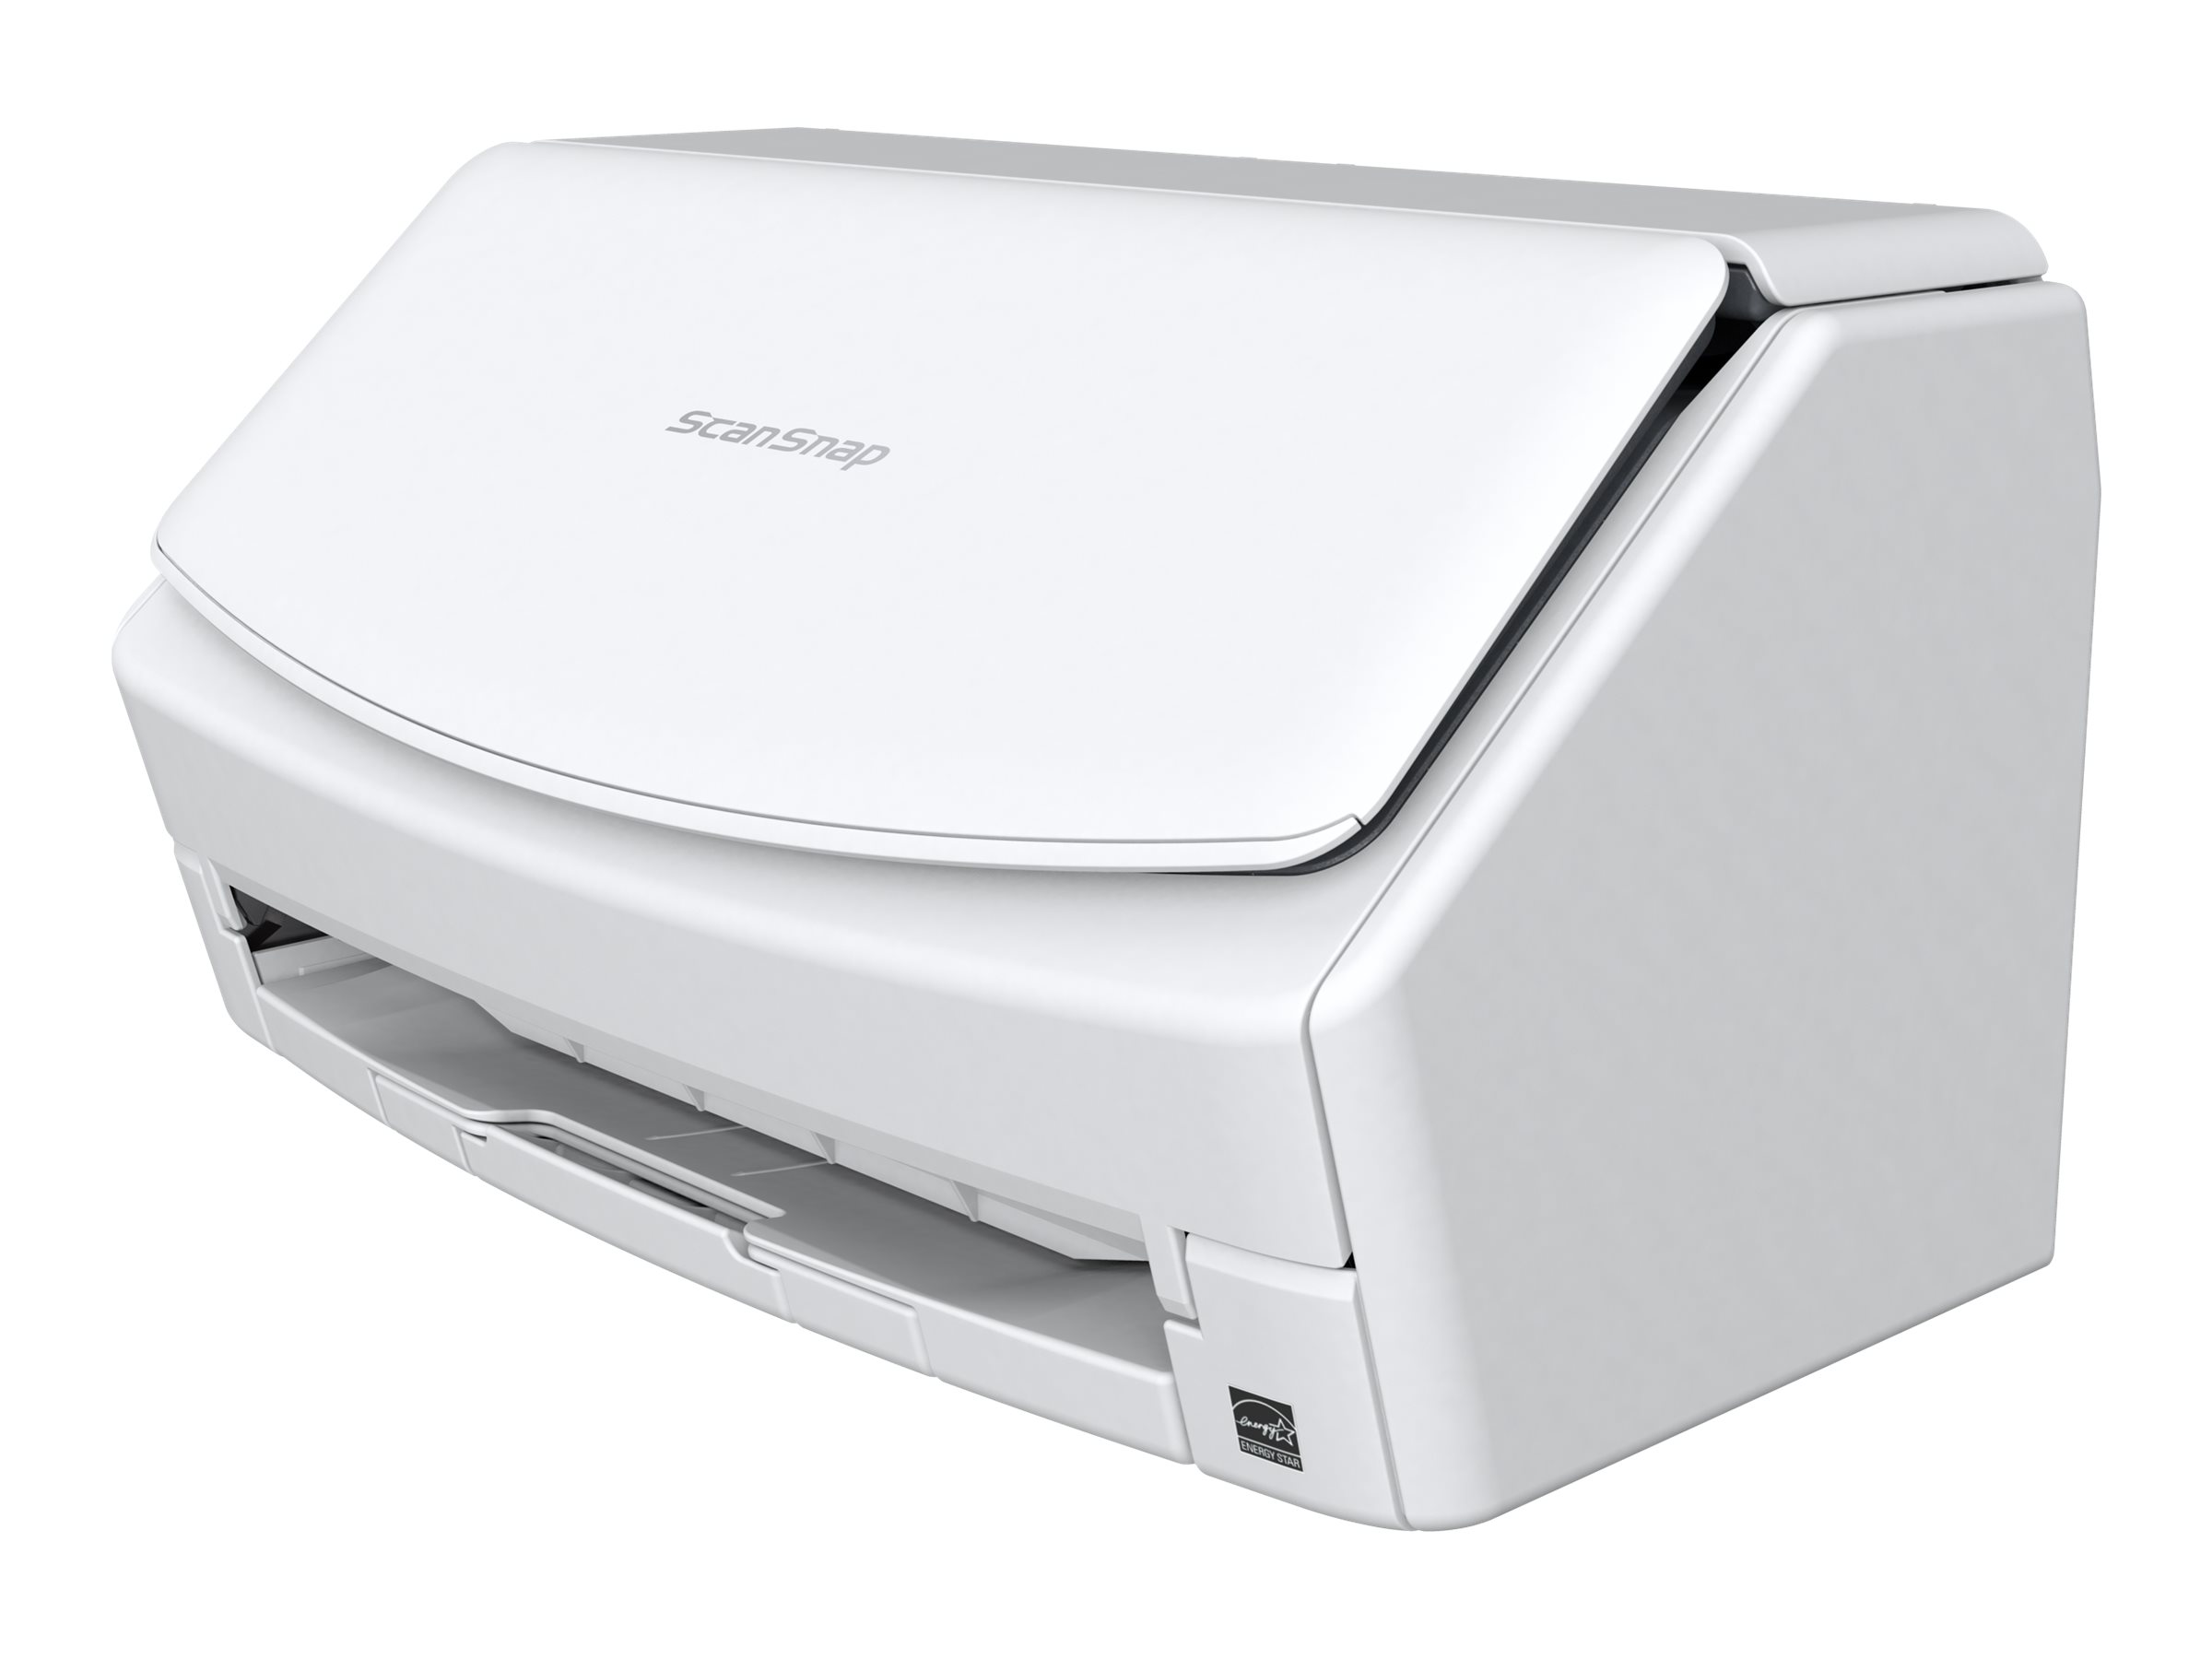 Fujitsu ScanSnap iX1400 - Dokumentenscanner - Dual CIS - Duplex - 216 x 360 mm - 600 dpi x 600 dpi - bis zu 40 Seiten/Min. (einfarbig)